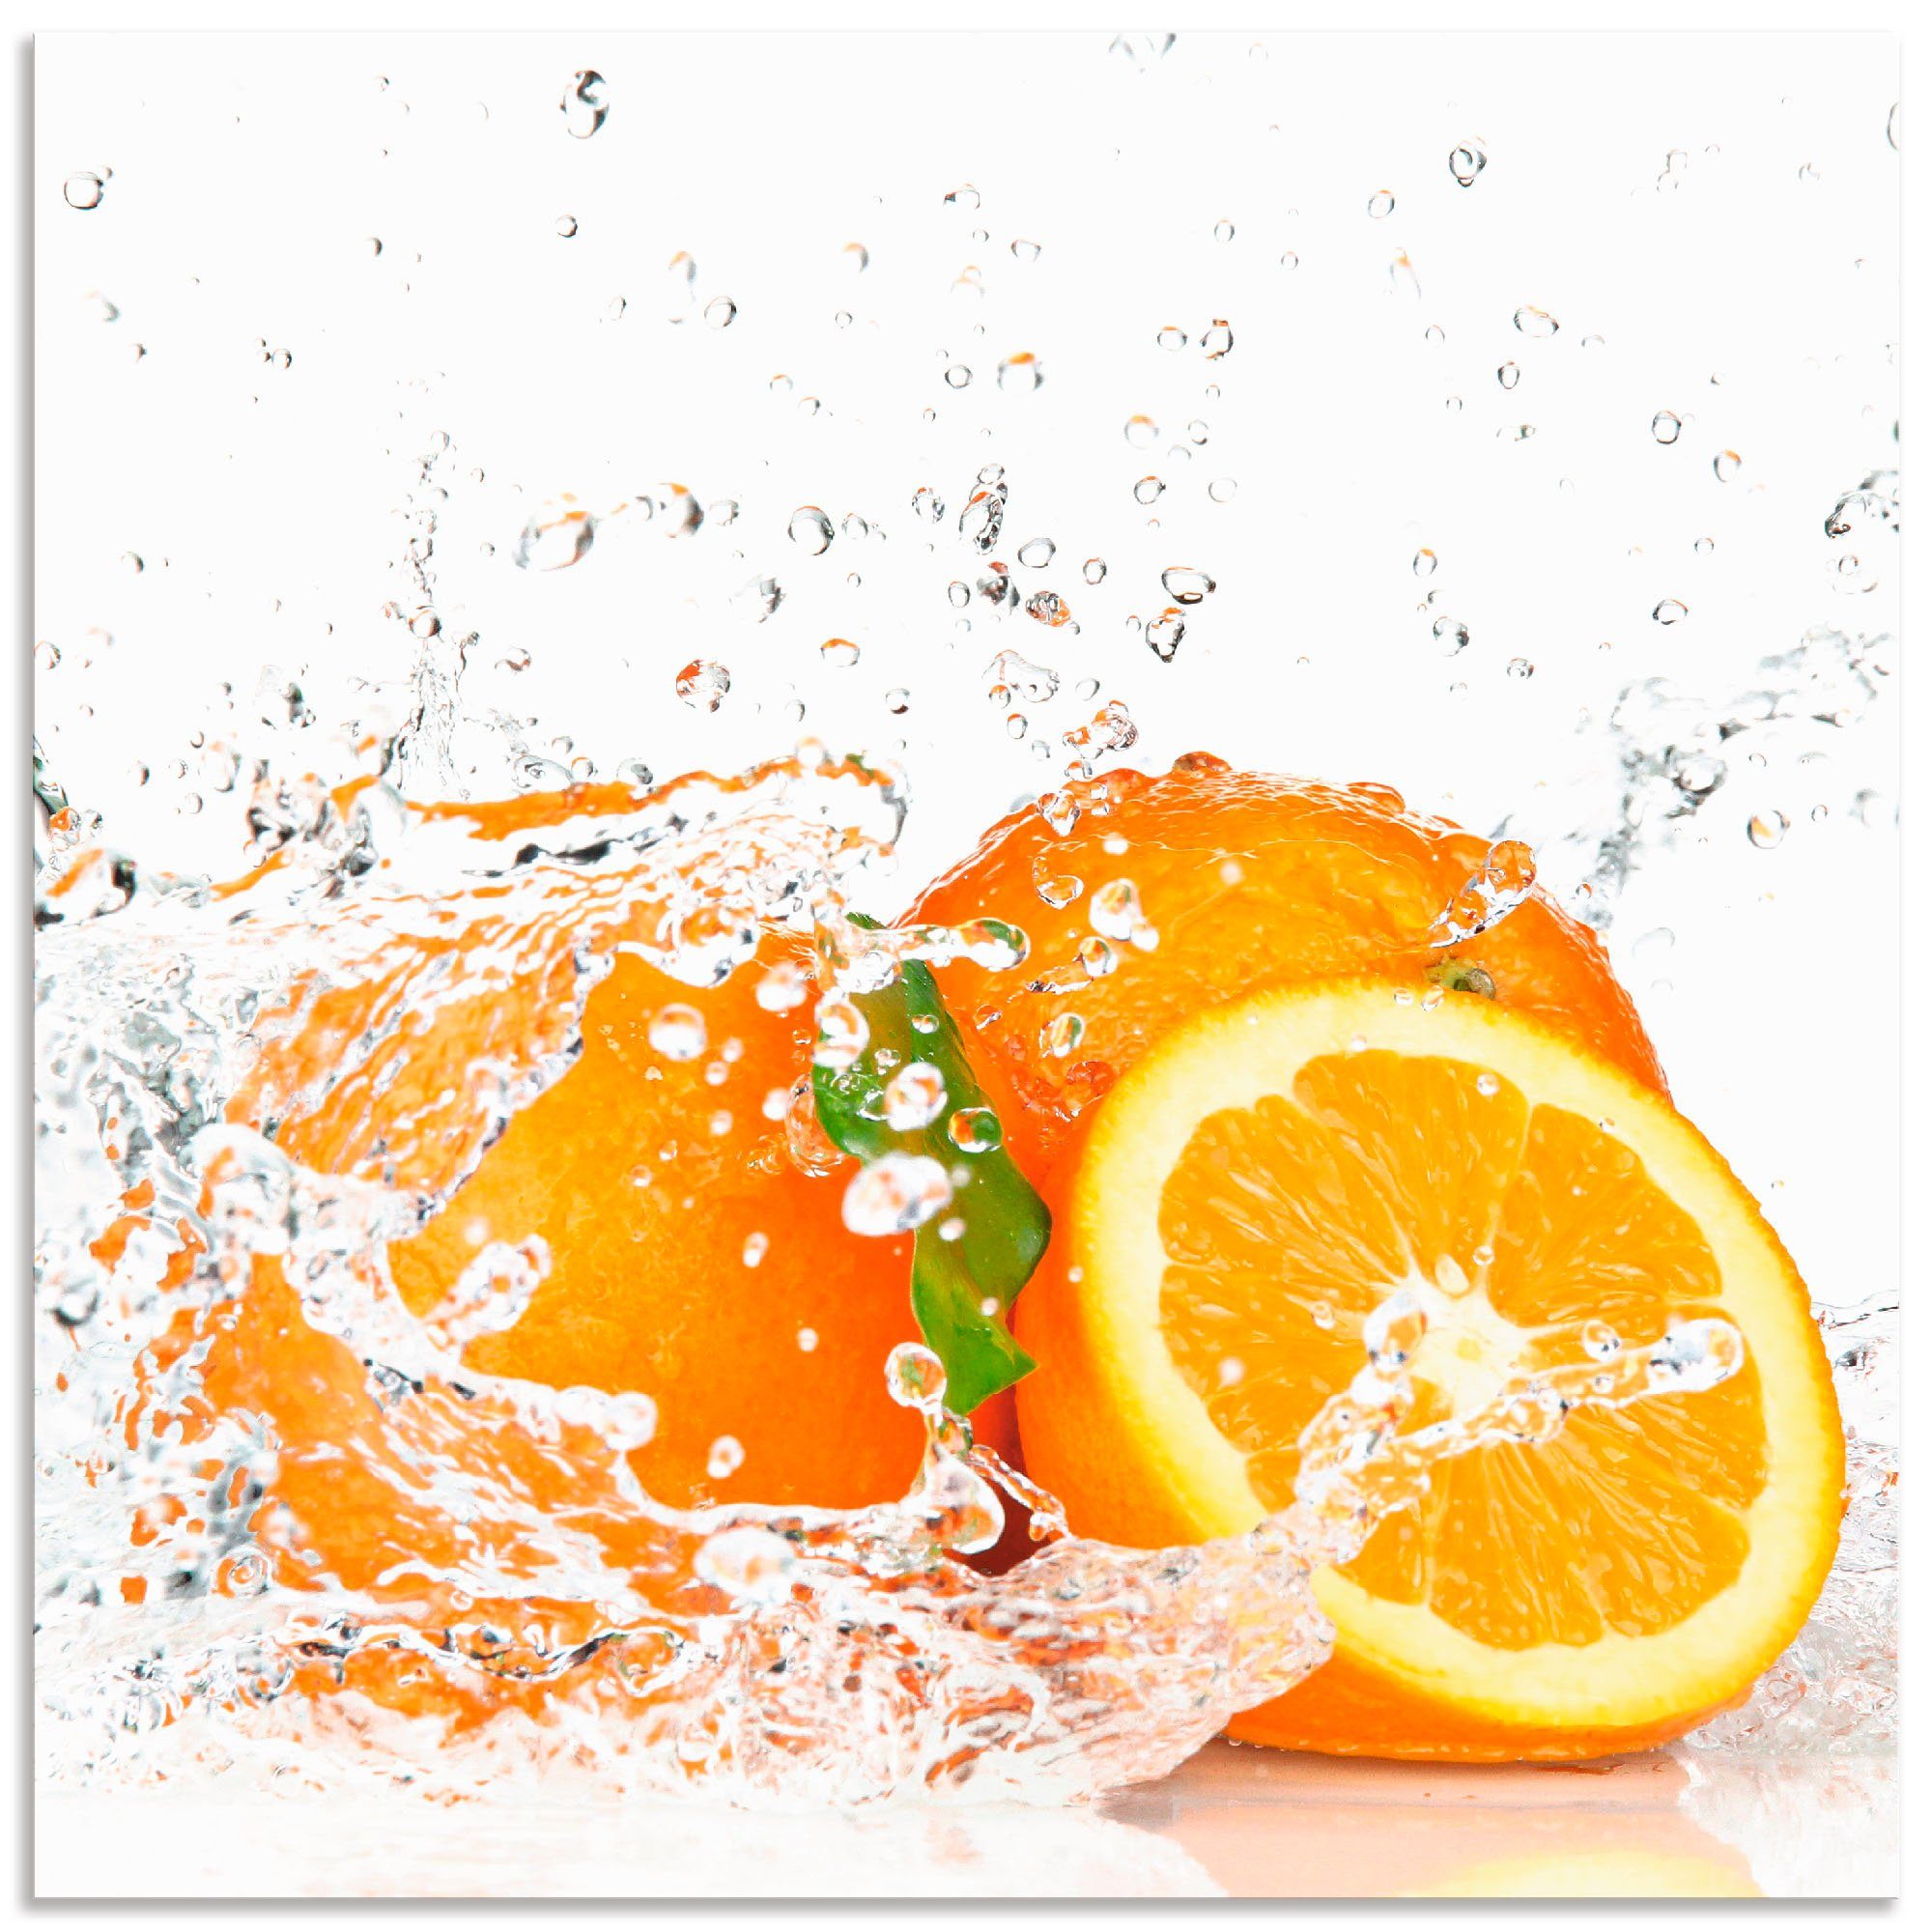 Artland Artprint Orange met spatwater in vele afmetingen & productsoorten - artprint van aluminium / artprint voor buiten, artprint op linnen, poster, muursticker / wandfolie ook g